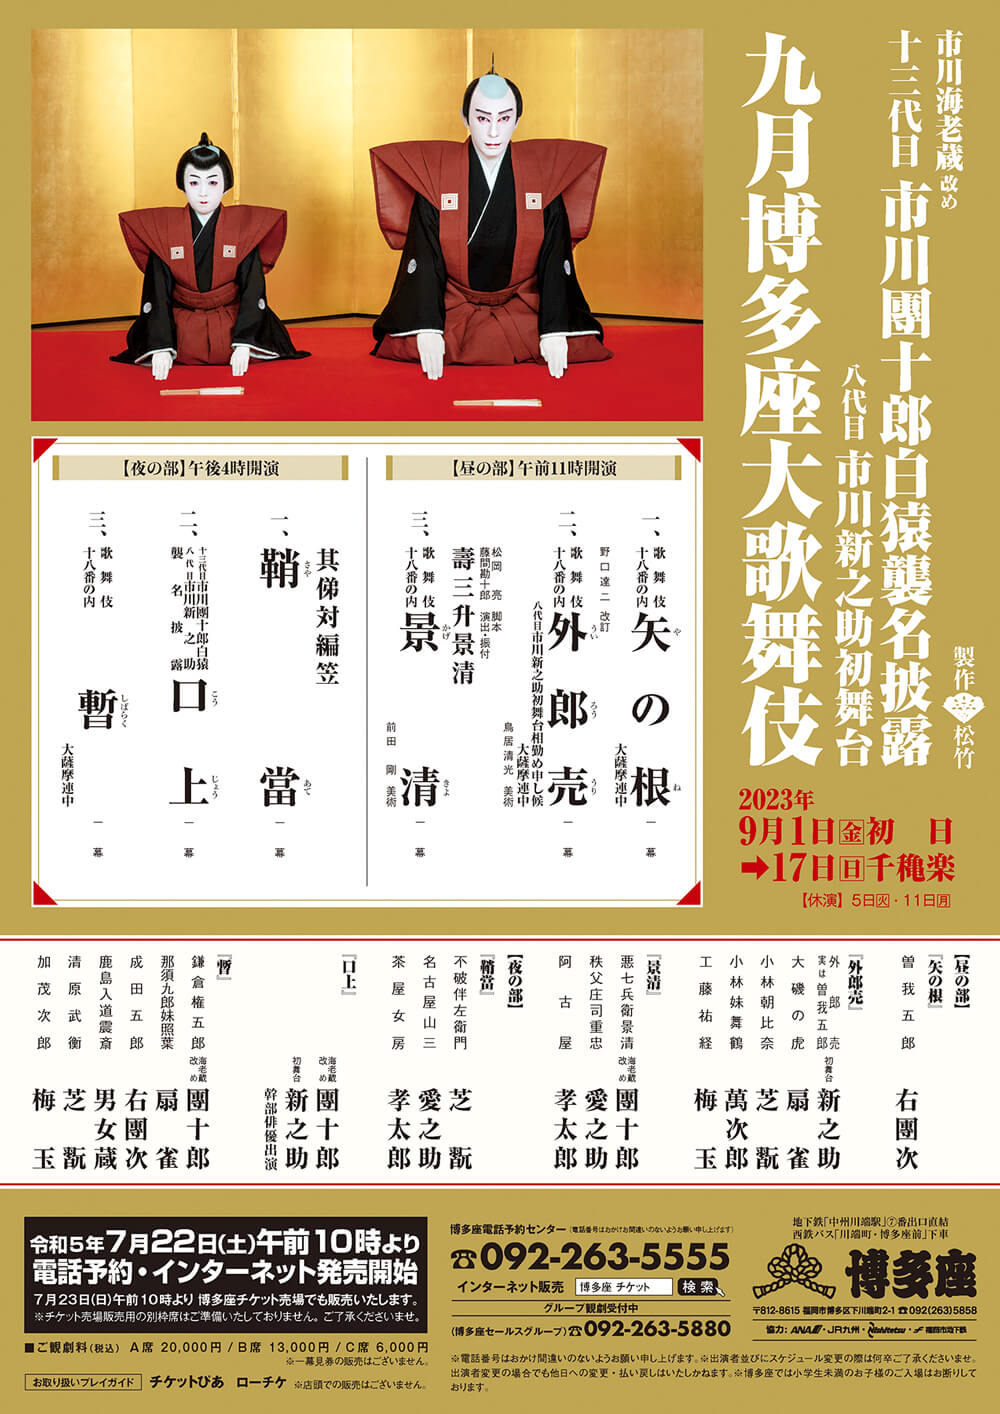 十三代目市川團十郎白猿襲名披露「九月博多座大歌舞伎」で津軽三味線と歌舞伎がコラボレーション